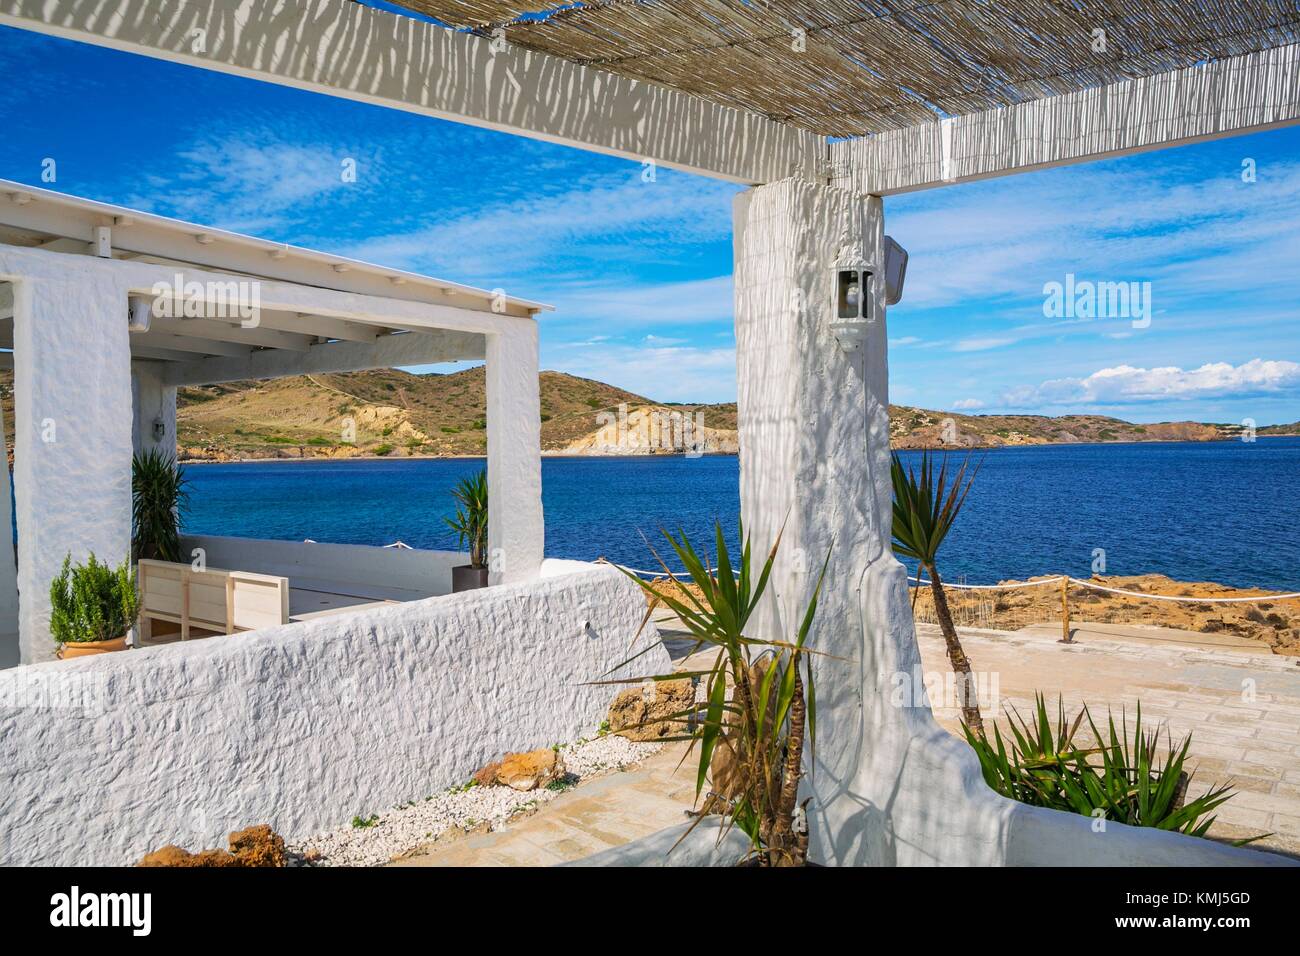 Isabella Beach Club. Playas de Fornells. Fornells. Es Mercadal Gemeinde.  Menorca Insel. Balearen. Spanien Stockfotografie - Alamy